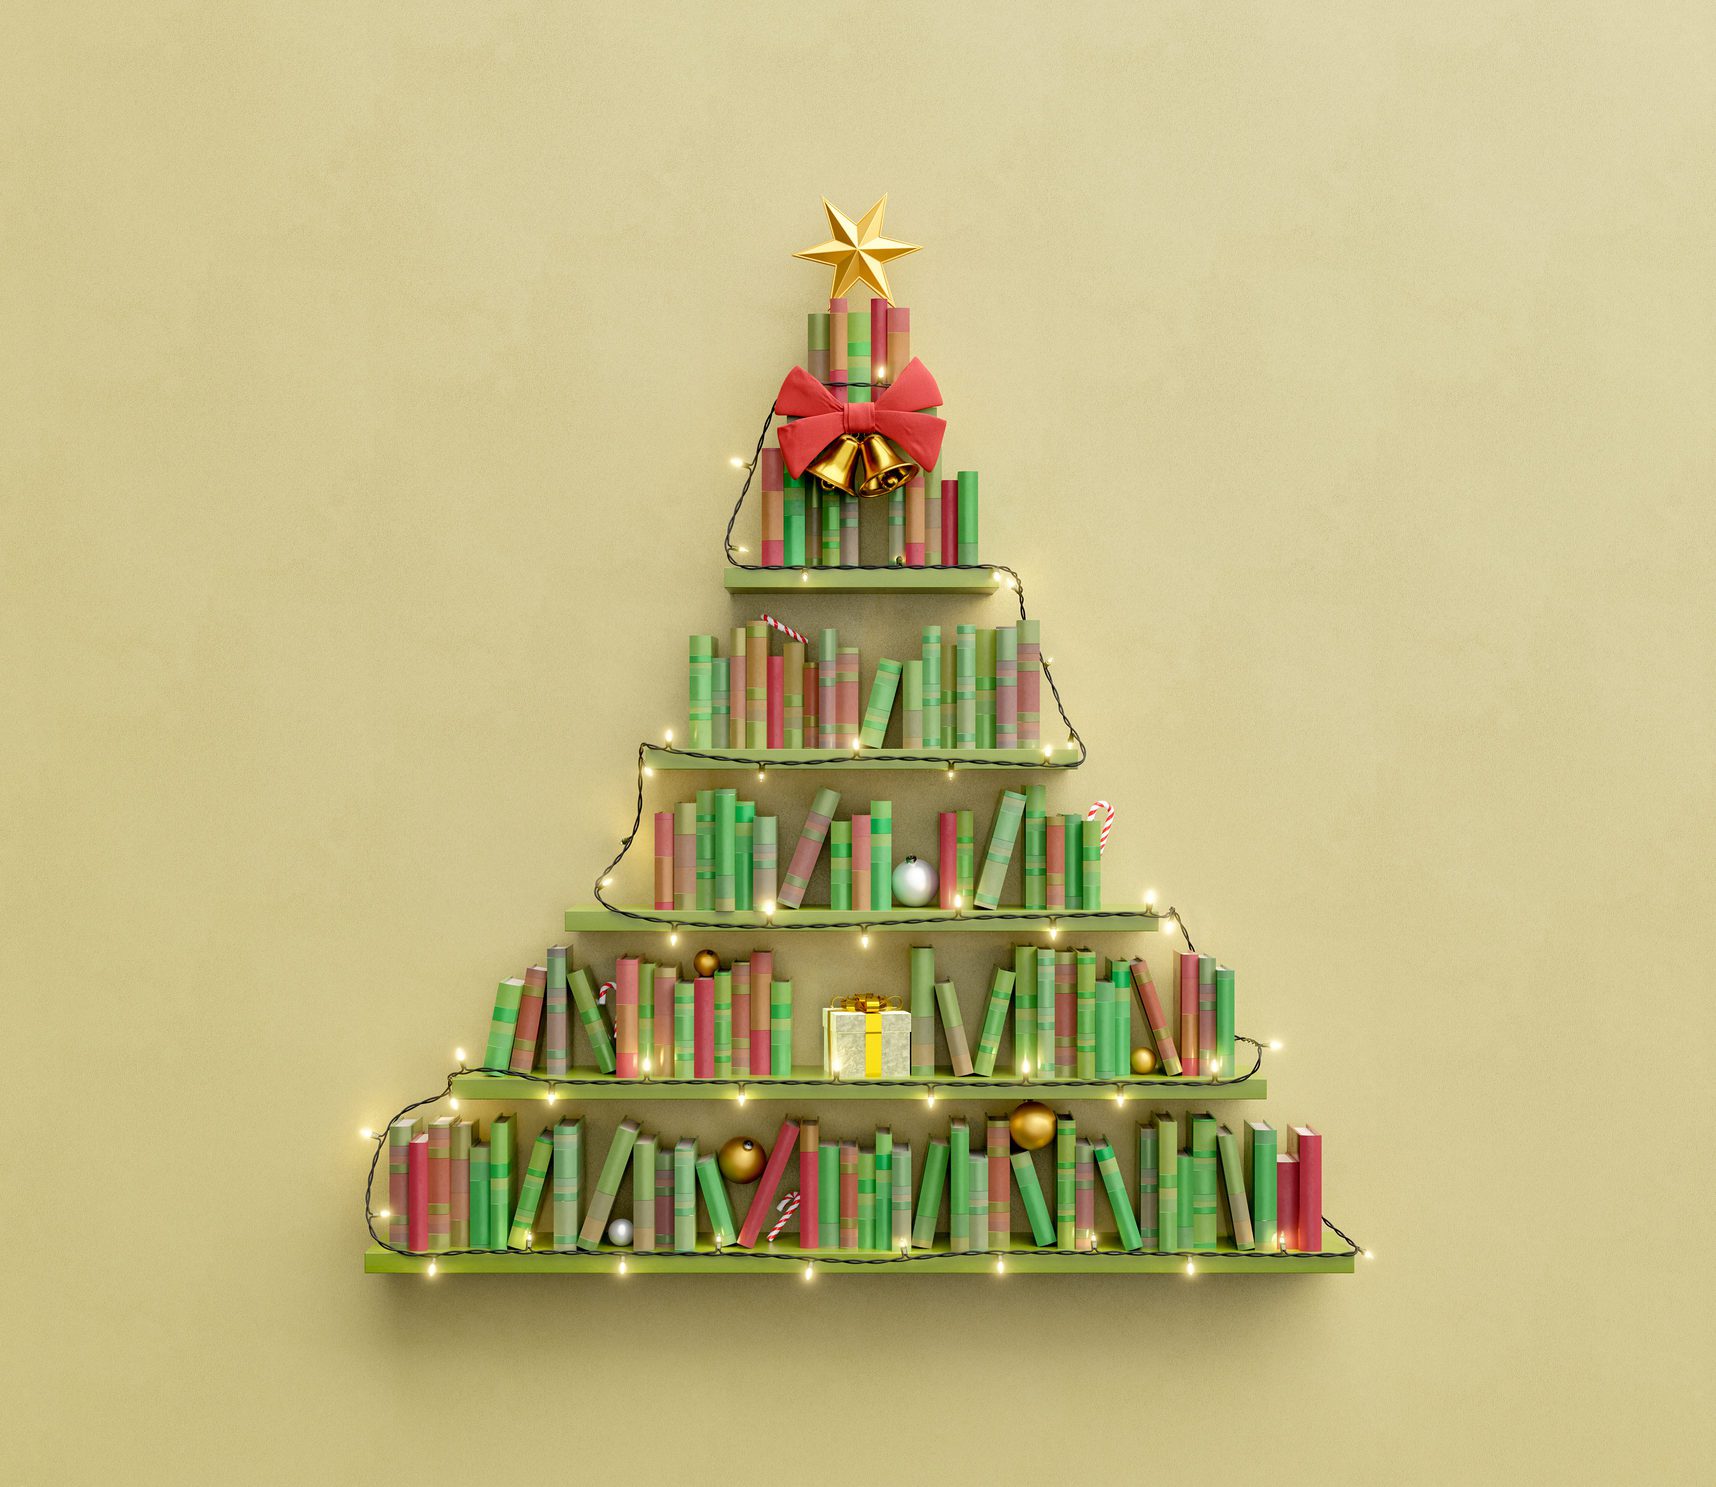 Monte a sua árvore de Natal com prateleiras e livros na parede. 